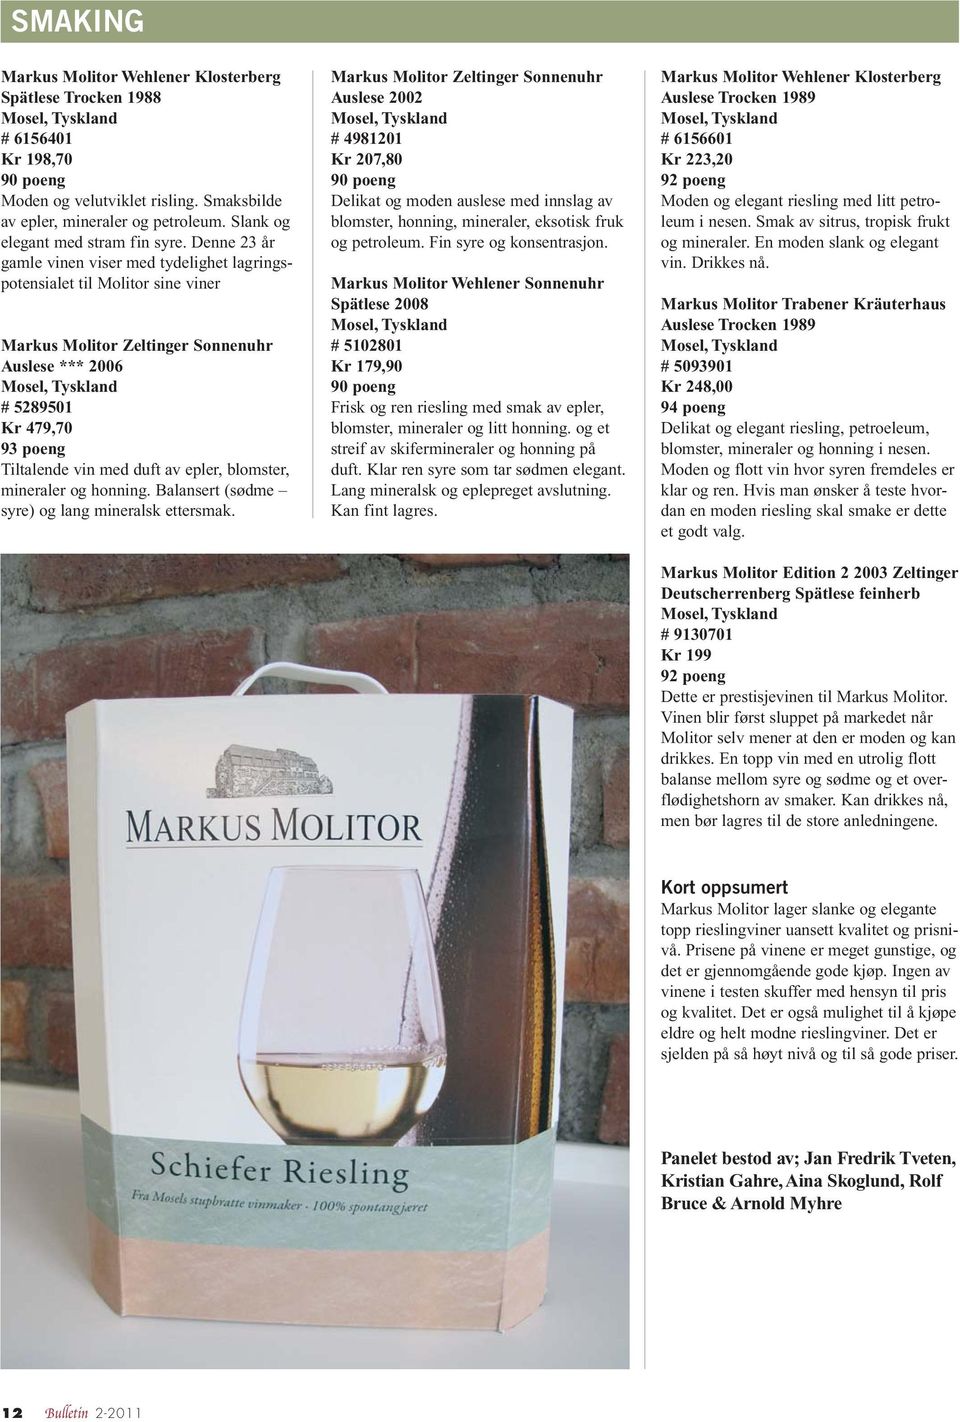 Denne 23 år gamle vinen viser med tydelighet lagringspotensialet til Molitor sine viner Markus Molitor Zeltinger Sonnenuhr Auslese *** 2006 Mosel, Tyskland # 5289501 Kr 479,70 93 poeng Tiltalende vin